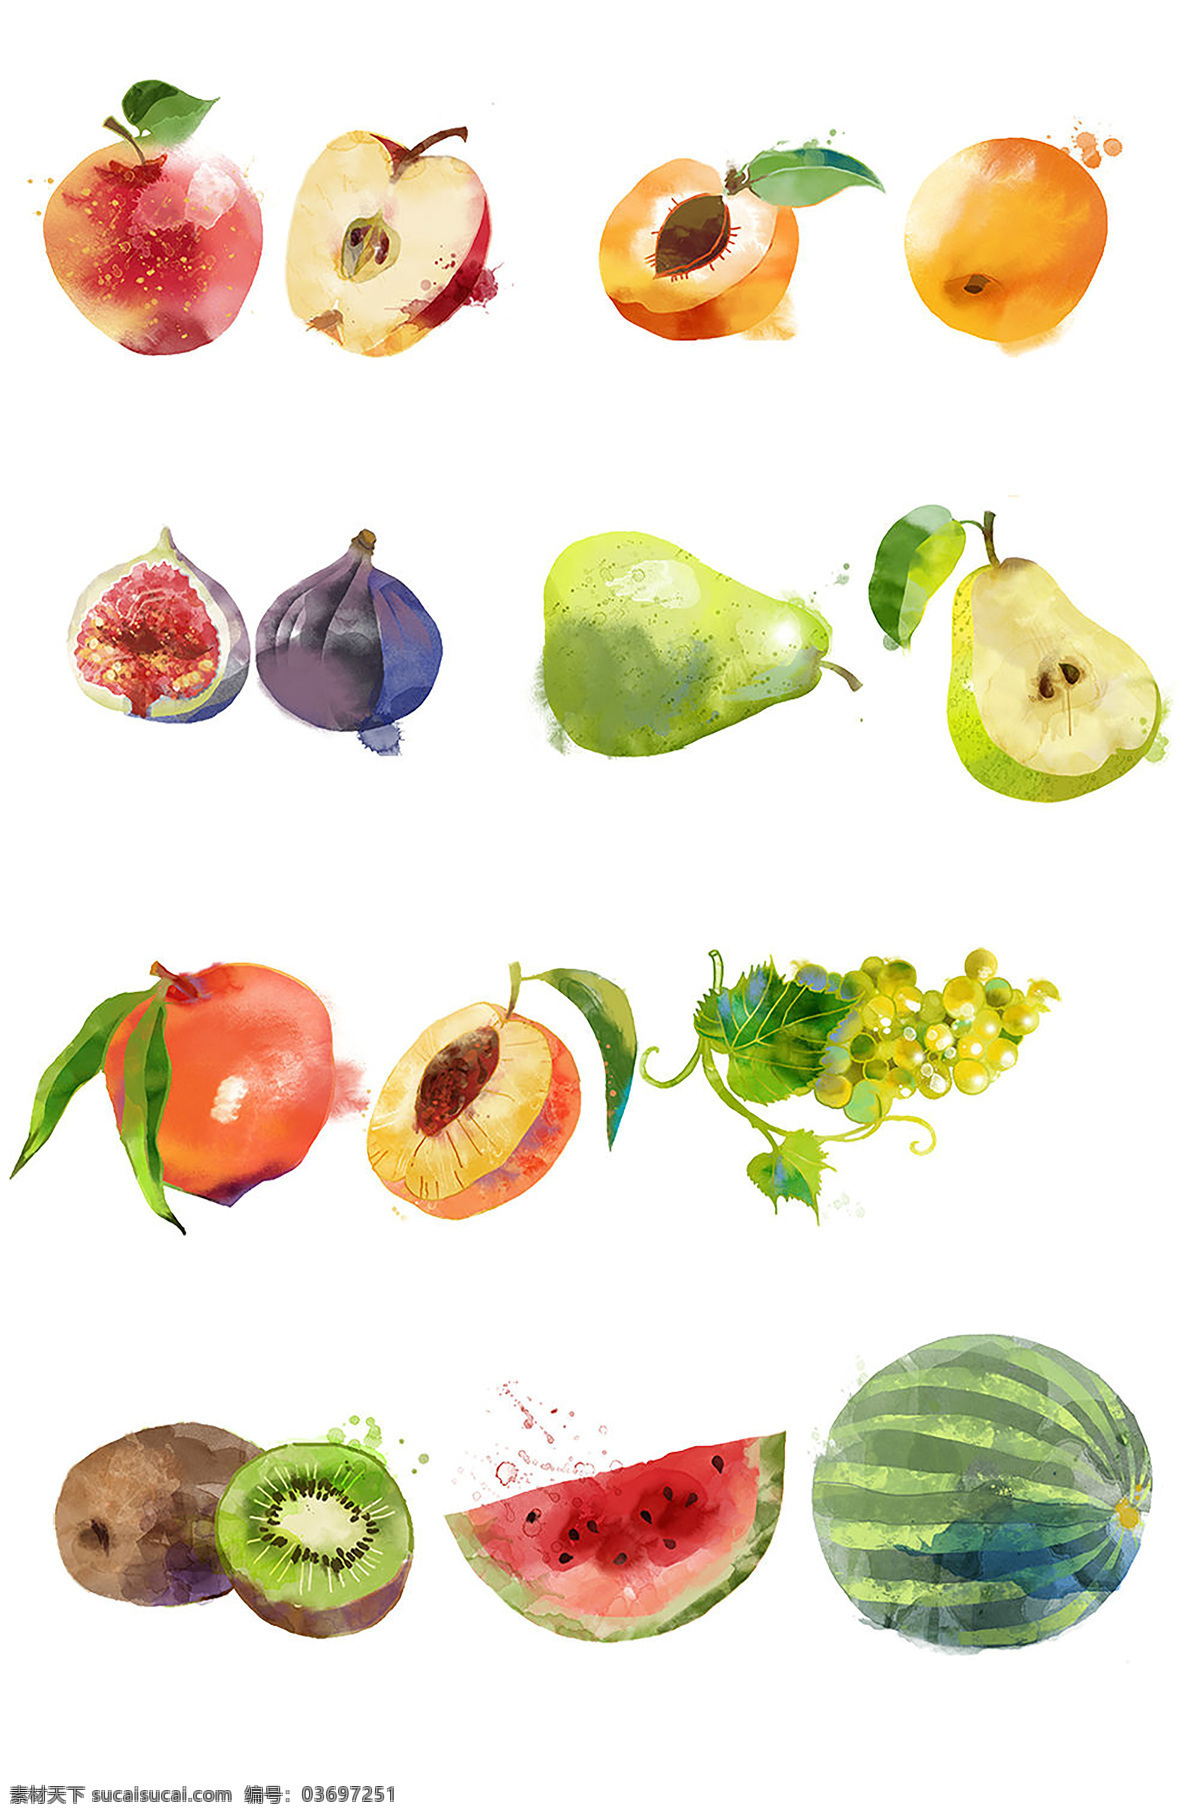 水果 多种水果画 水粉画 西瓜 苹果 梨子 葡萄 猕猴桃 各种水果 水果画 水粉水果